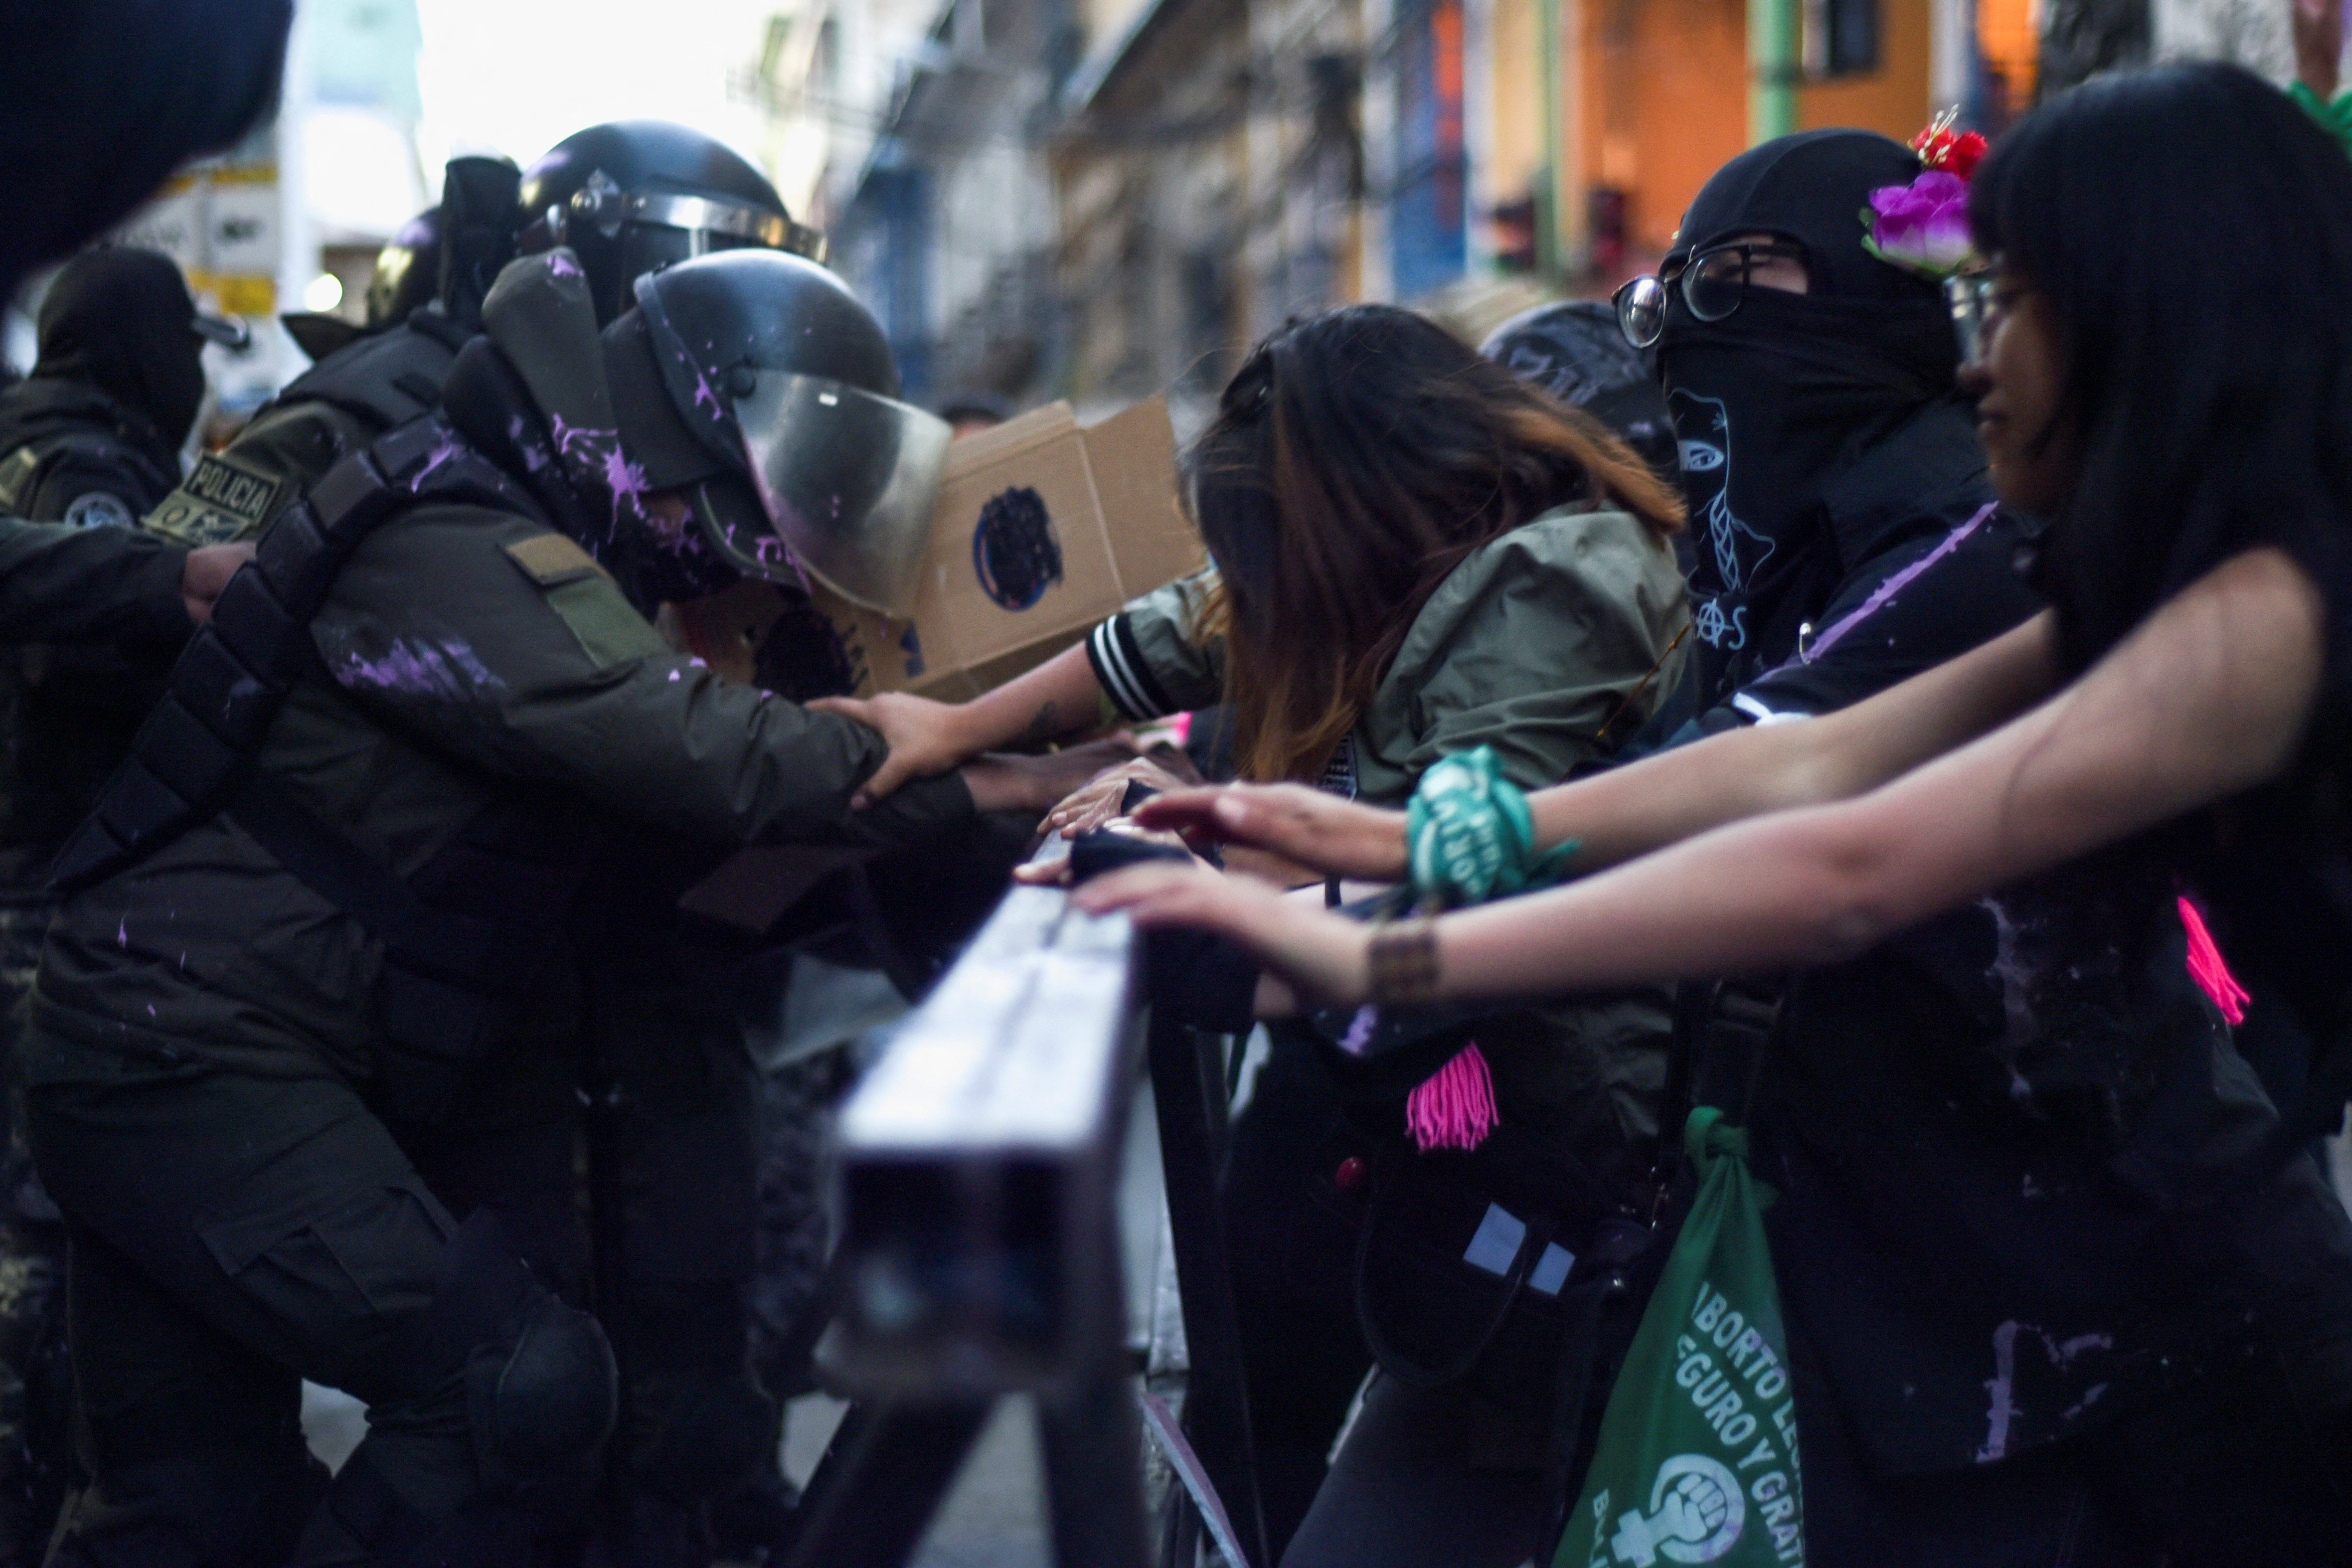 La Fiscalía de Bolivia agrupó en un solo caso las denuncias contra los líderes de las protestas en Santa Cruz. (REUTERS/Claudia Morales)